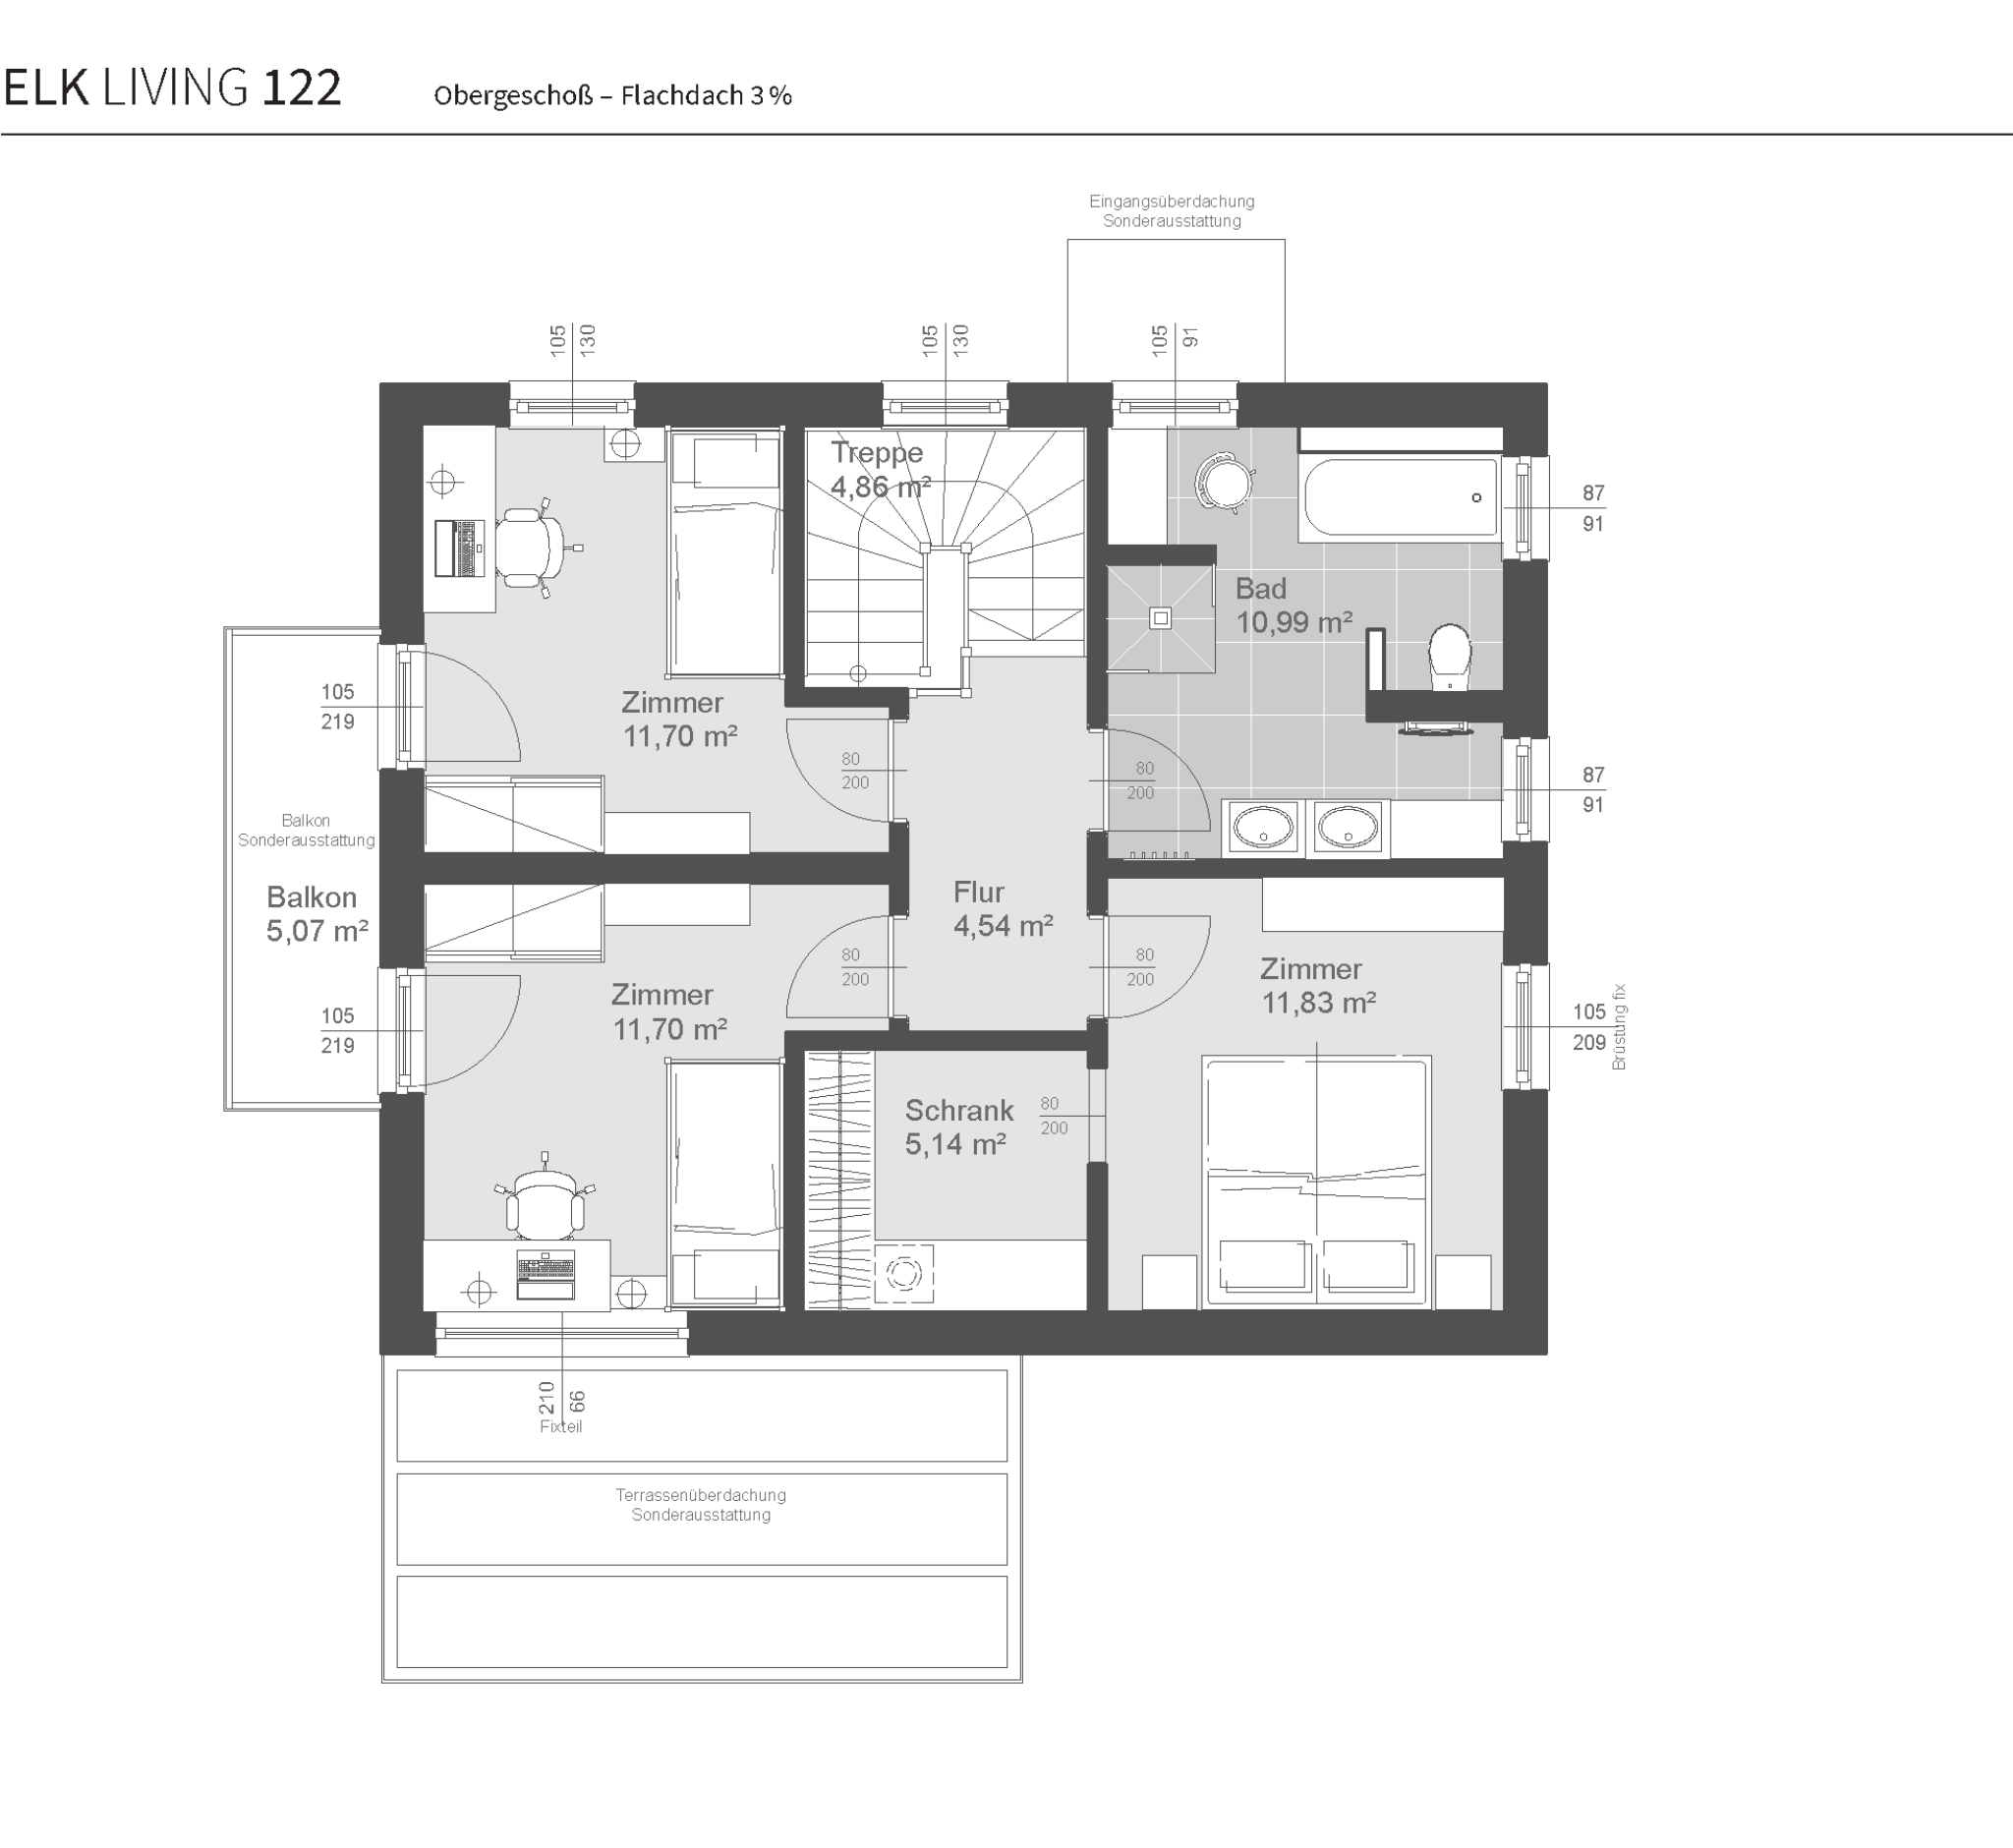 grundriss-fertighaus-elk-living-122-obergeschoss-flachdach3